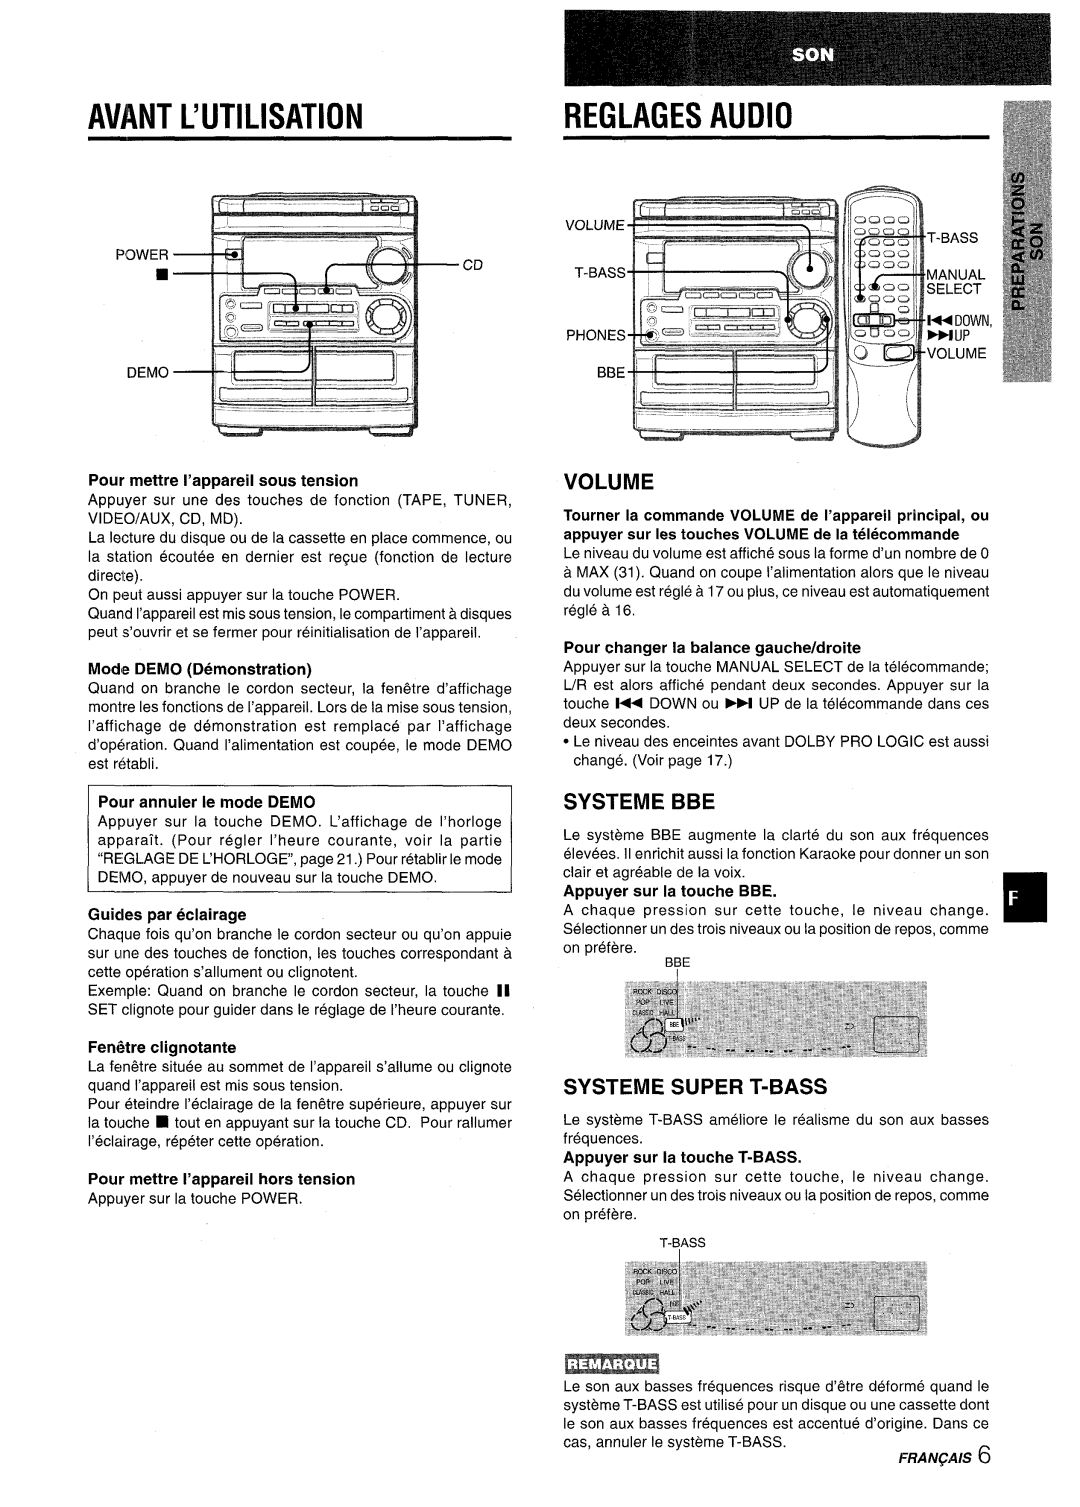 Aiwa CX-NMT50 Avant L’Utilisation, Reglages Audio, Systeme Bbe, Systeme Super T-Bass, Pour mettre I’appareil sous tension 